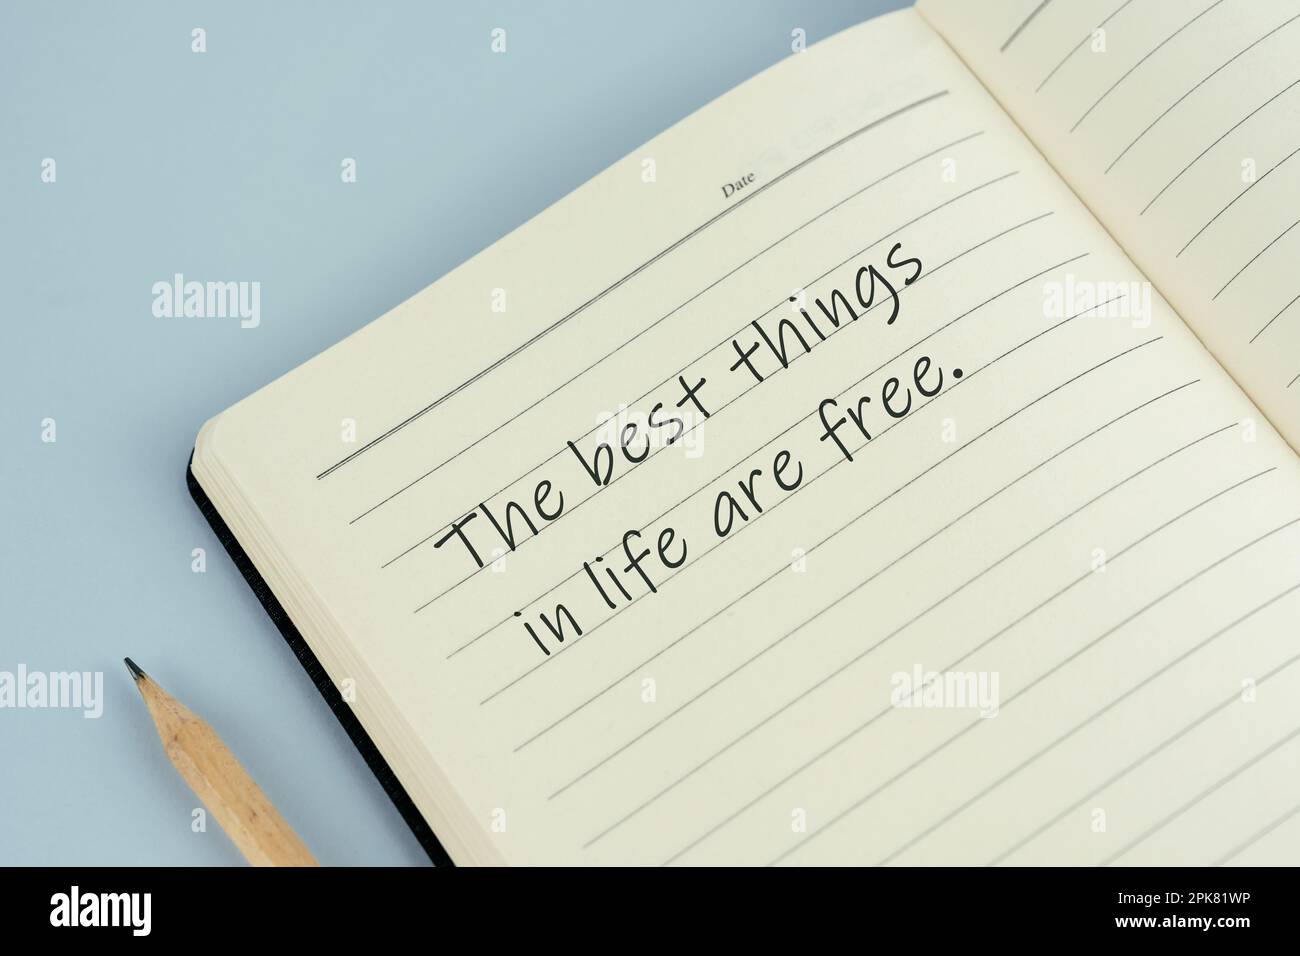 Citations inspirantes écrites sur le bloc-notes - les meilleures choses dans la vie sont gratuites Banque D'Images